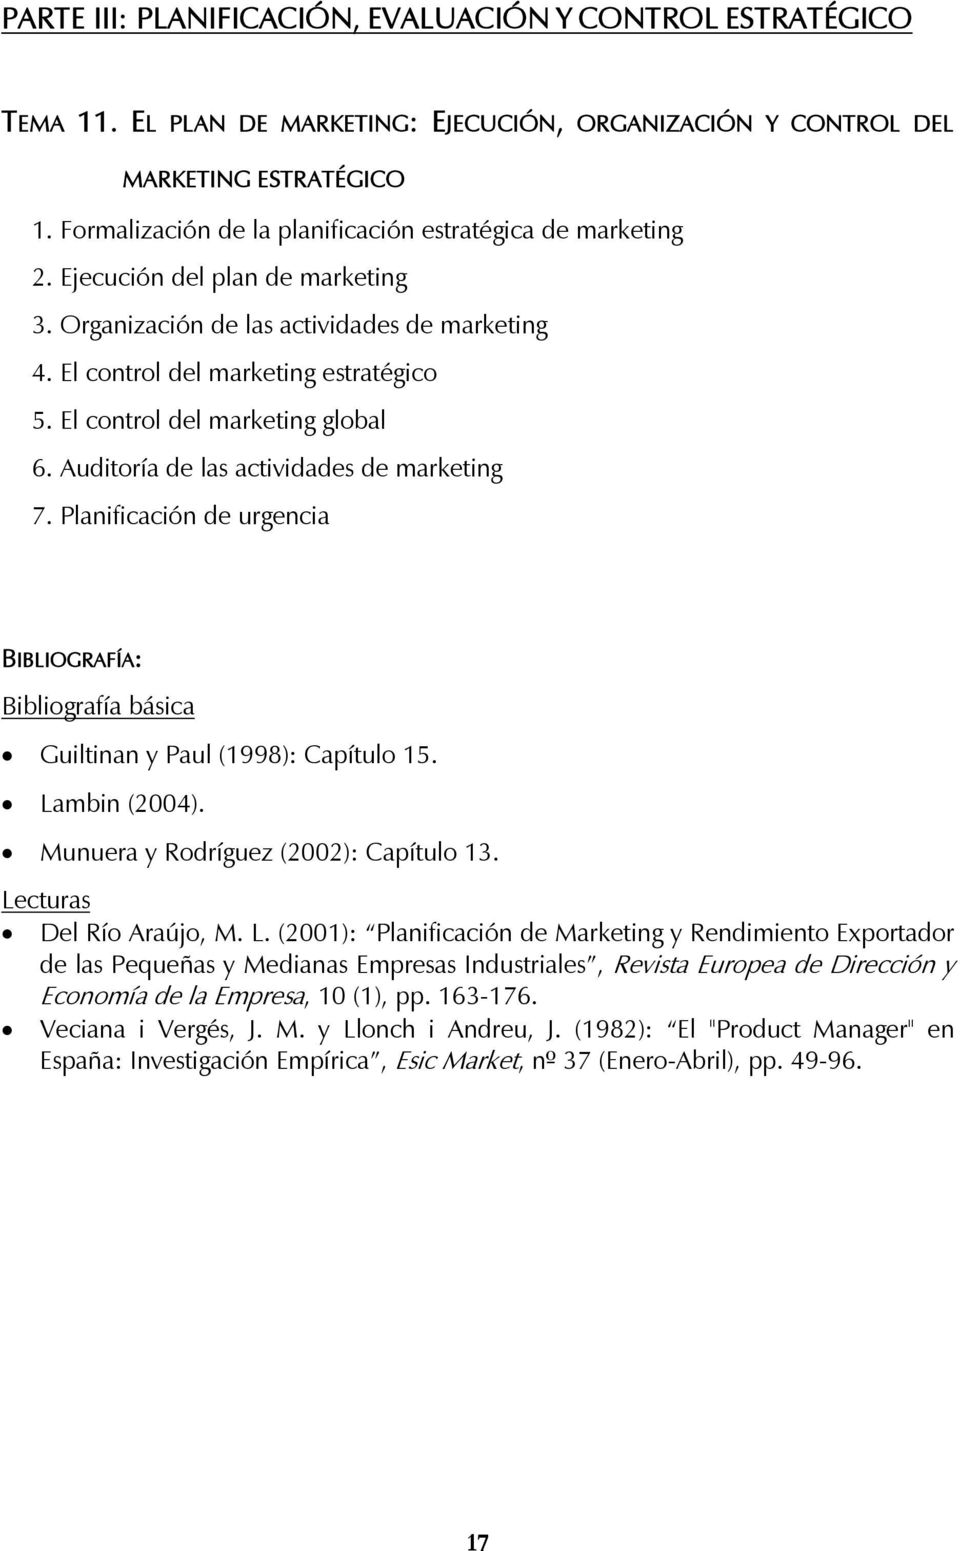 El control del marketing global 6. Auditoría de las actividades de marketing 7. Planificación de urgencia Guiltinan y Paul (1998): Capítulo 15. Lambin (2004). Munuera y Rodríguez (2002): Capítulo 13.